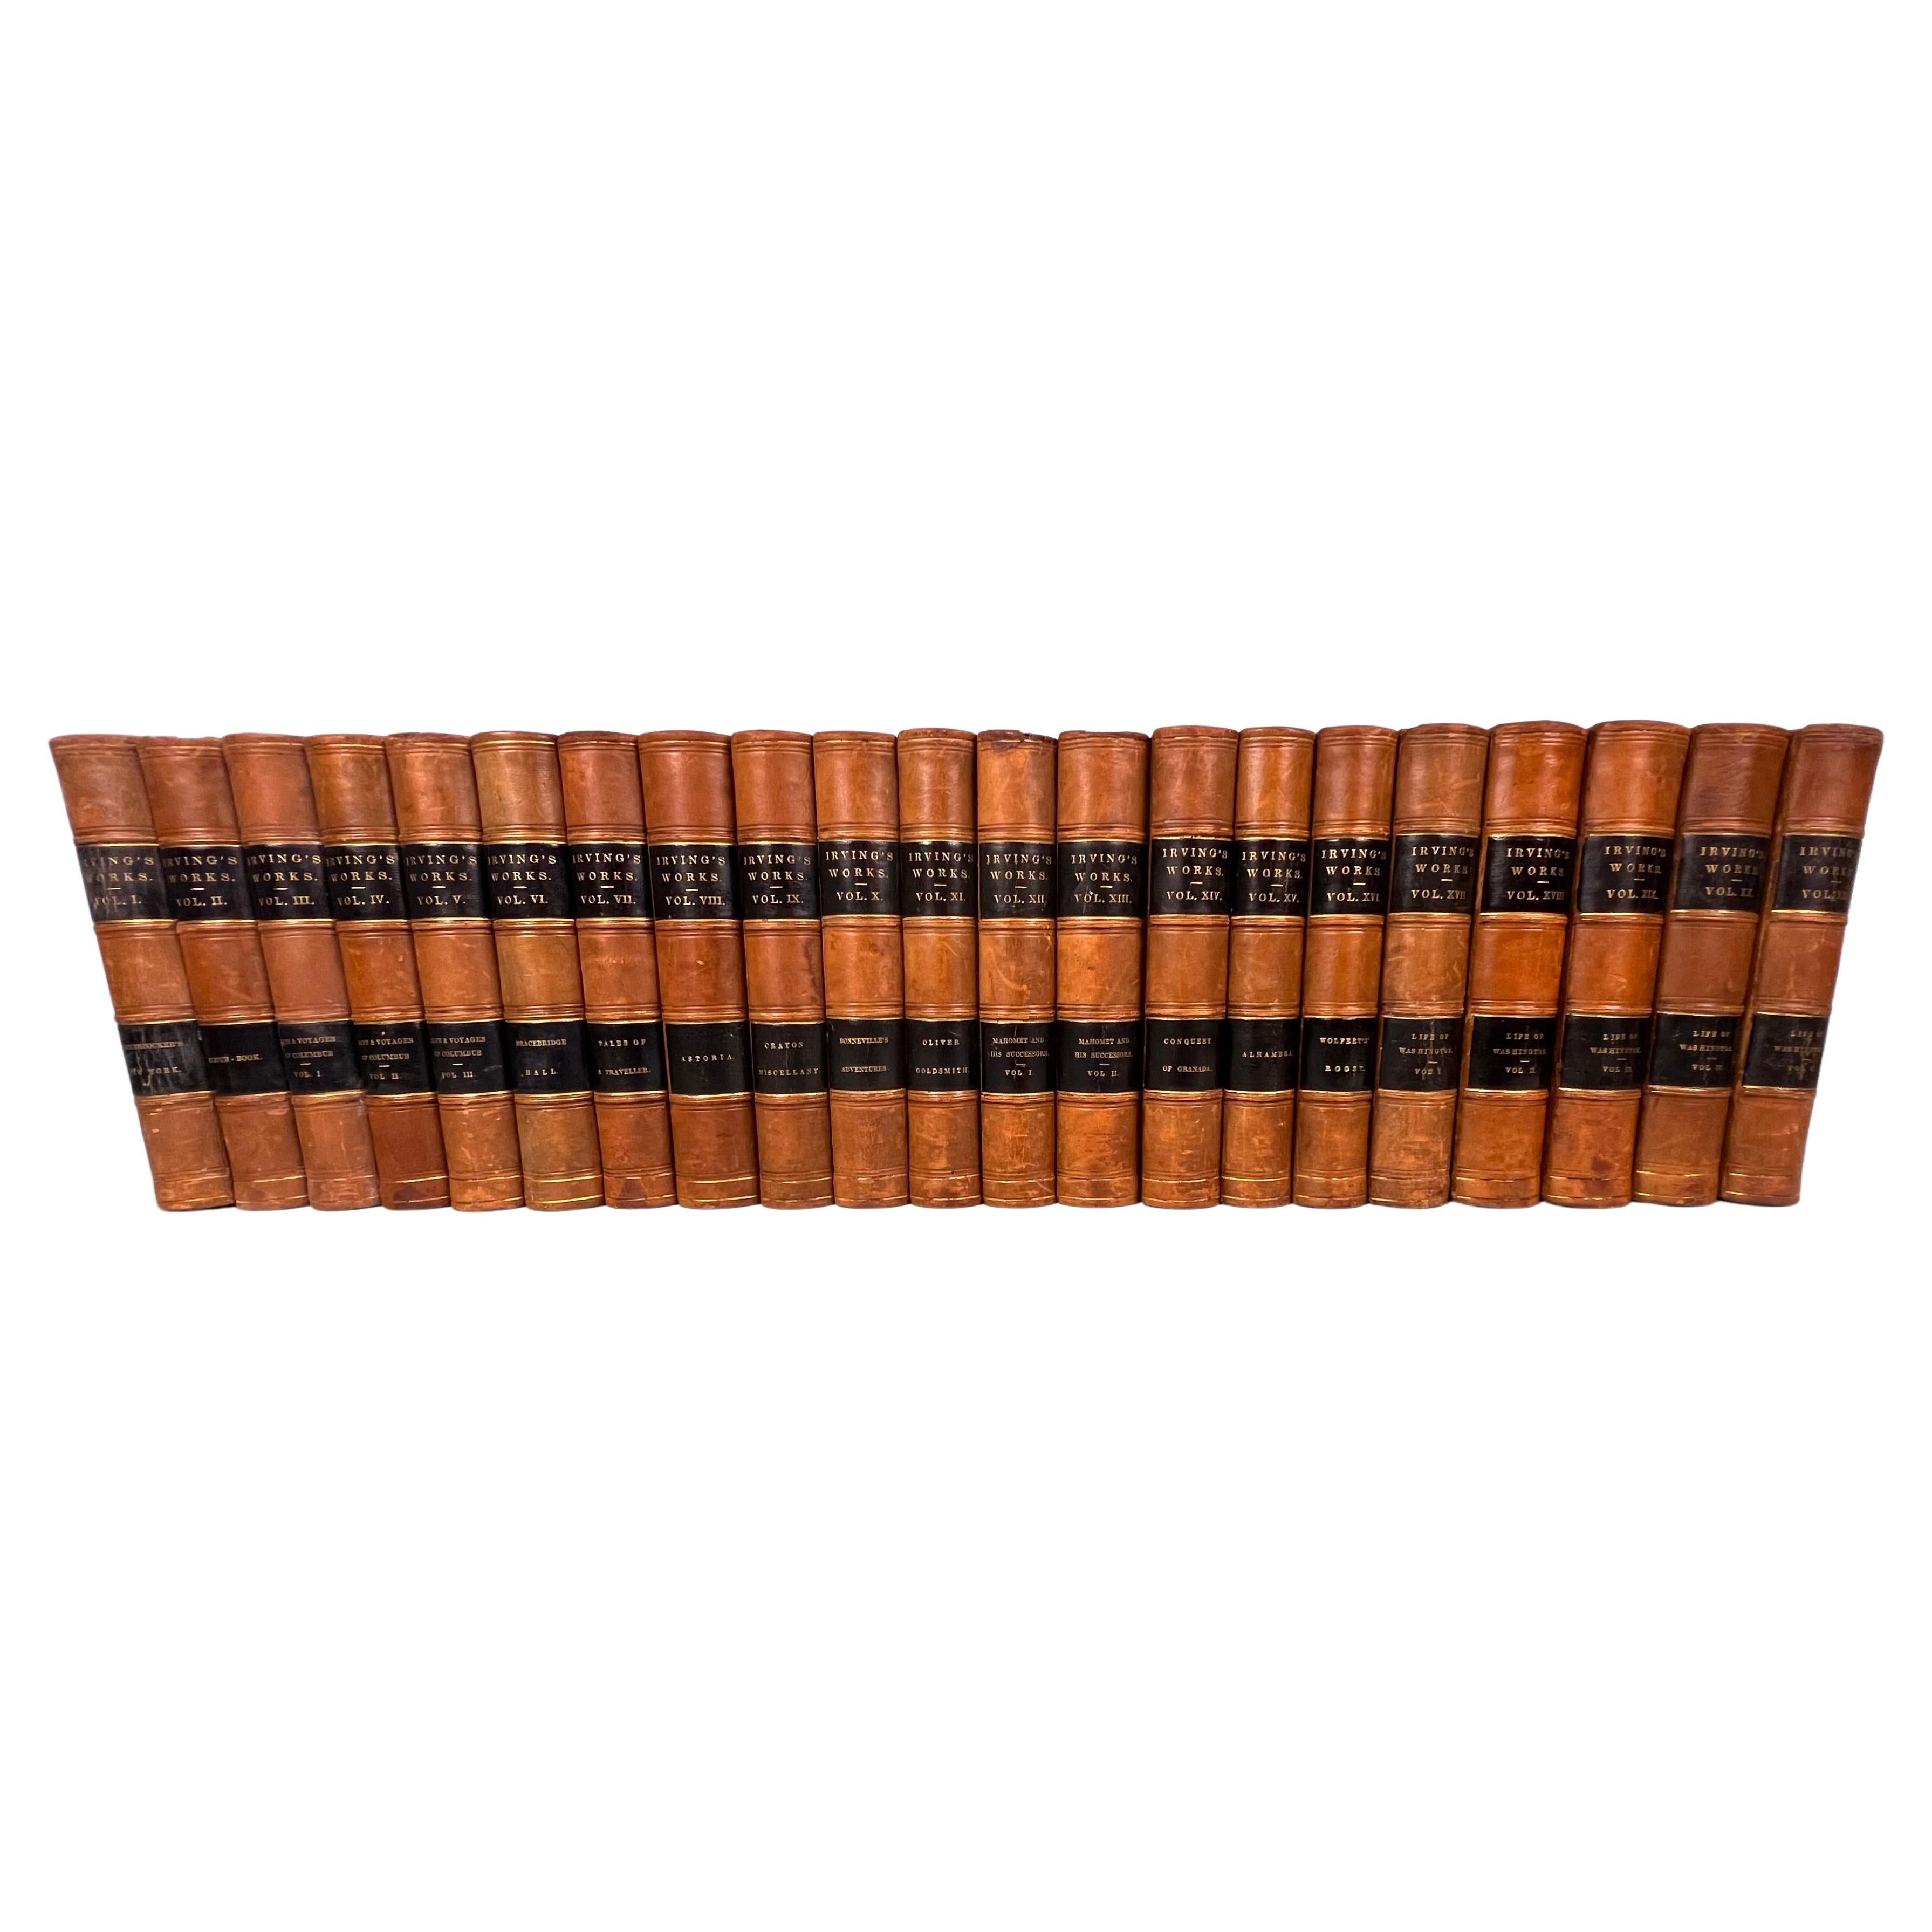 Les œuvres de Washington Irving dans 21 volumes reliés en cuir illustrés